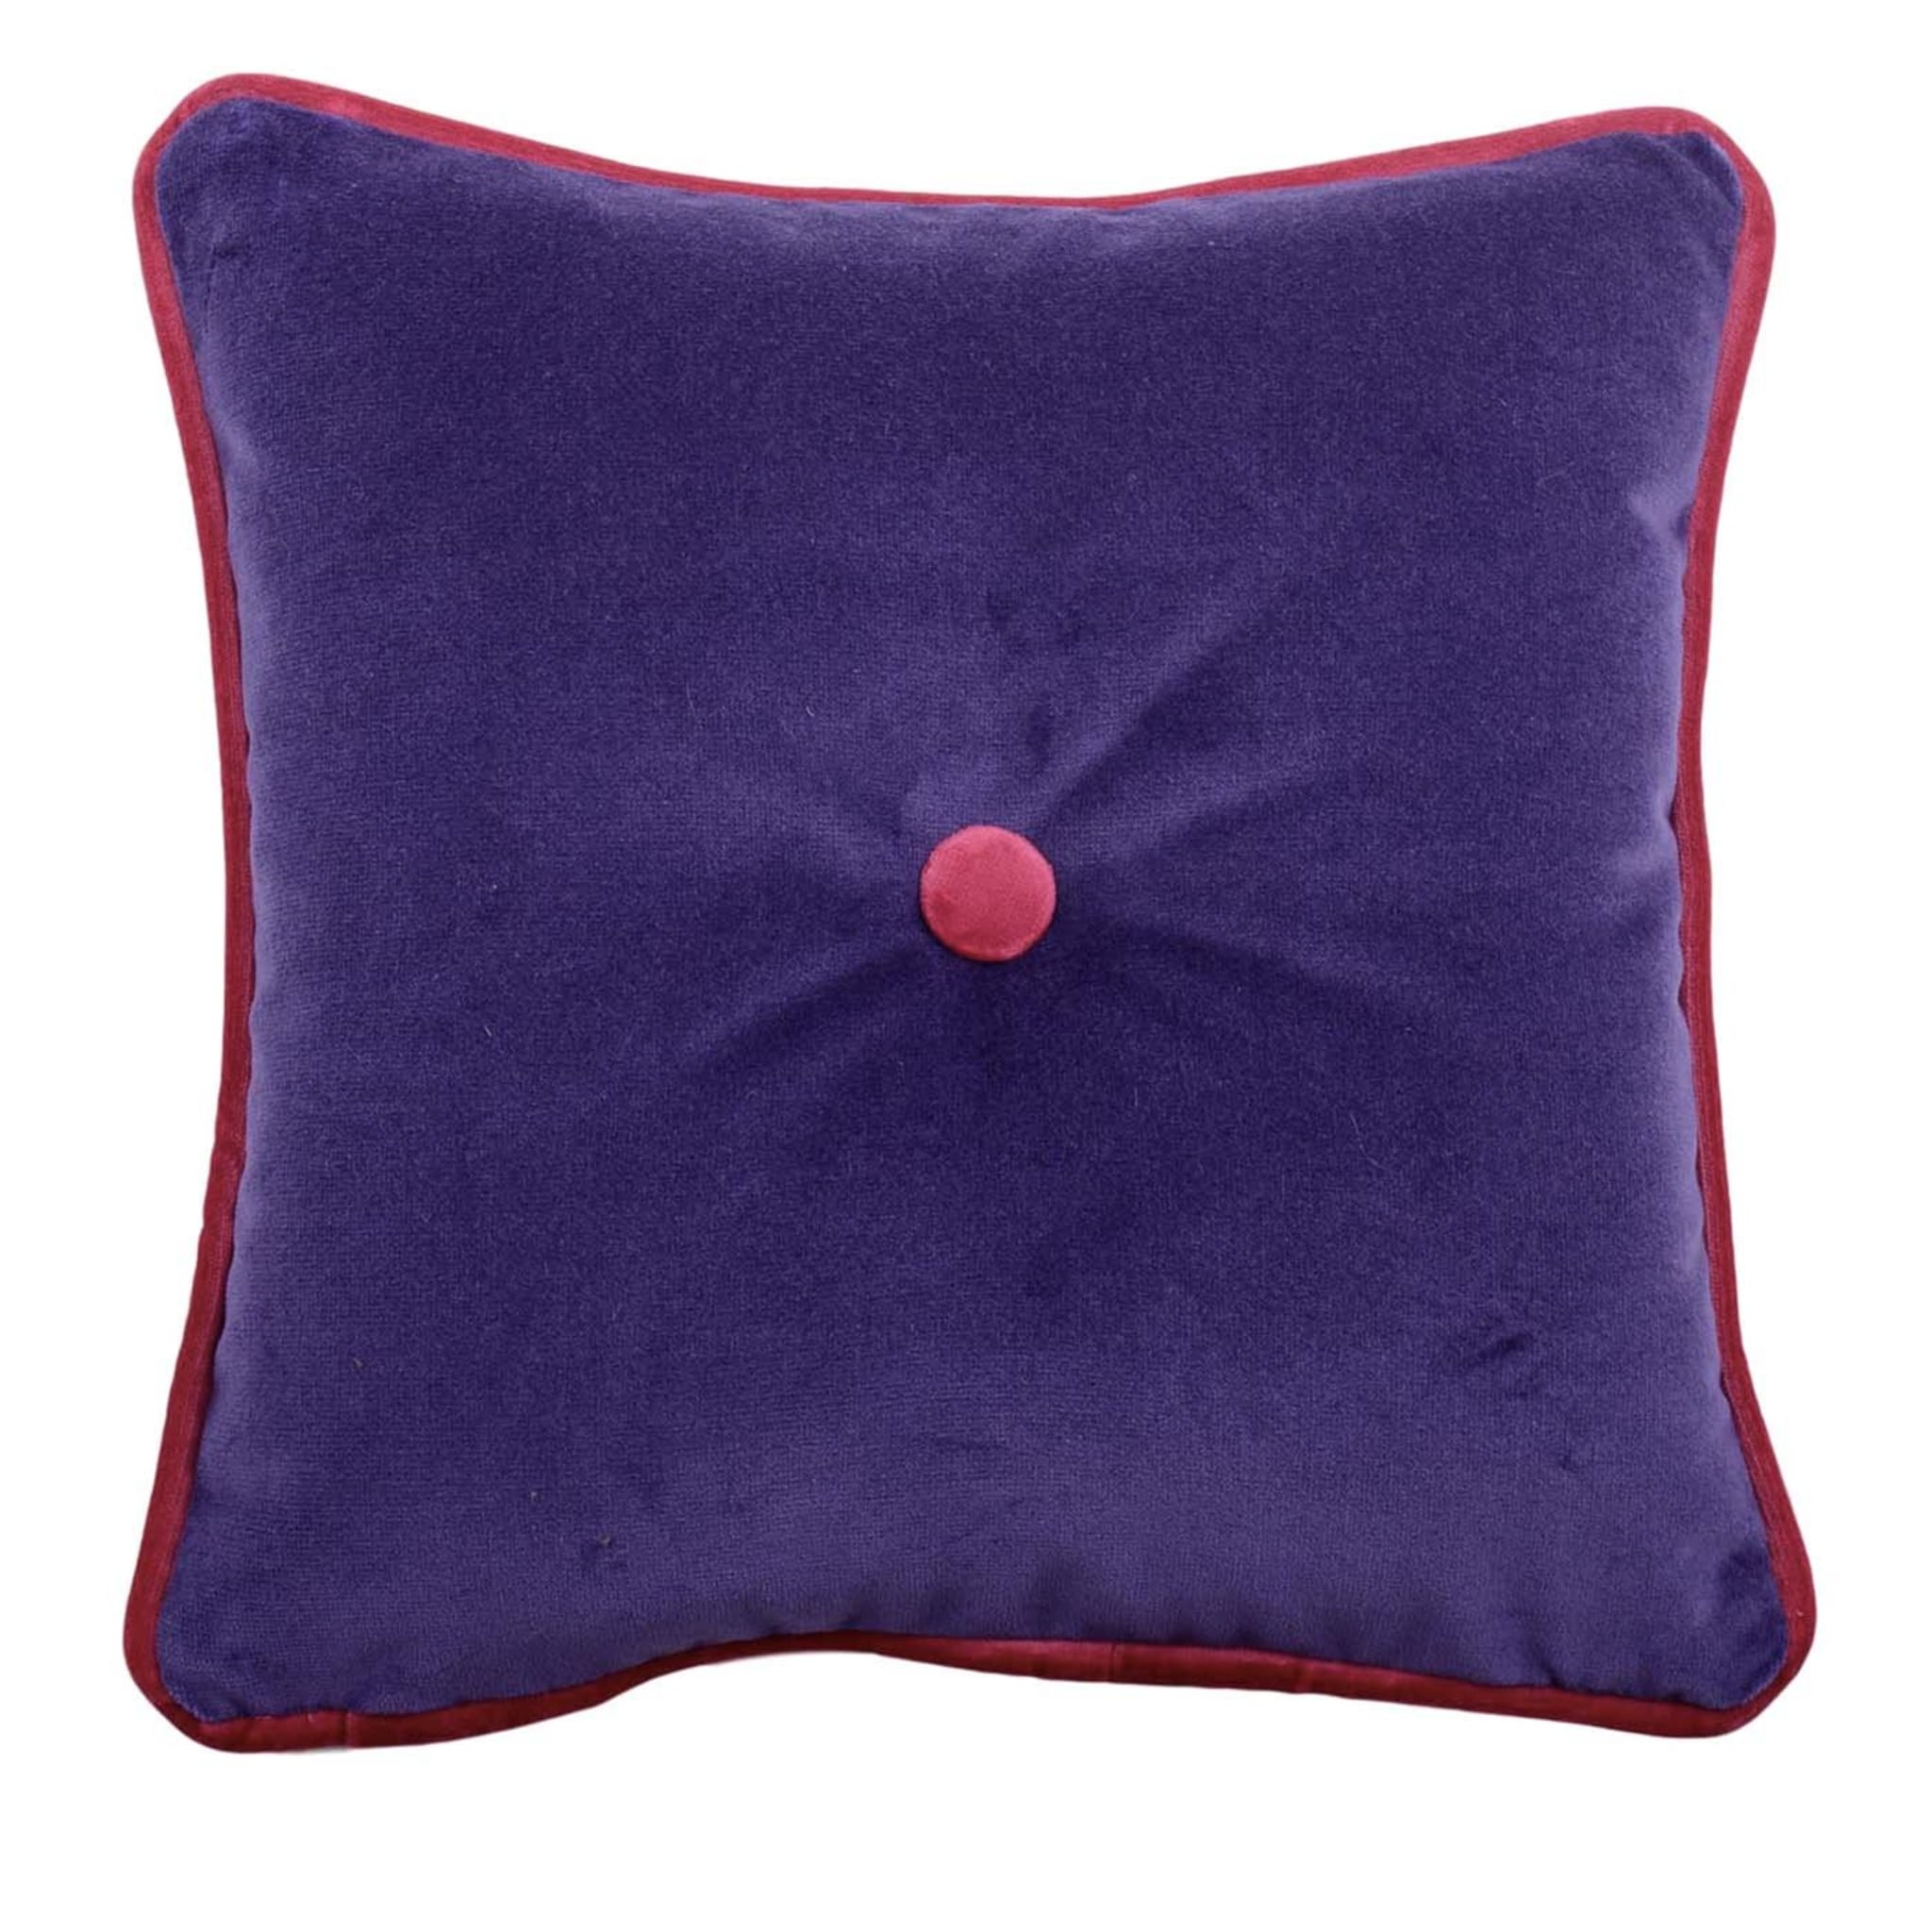 Carré Purple Tufted Cushion - Main view